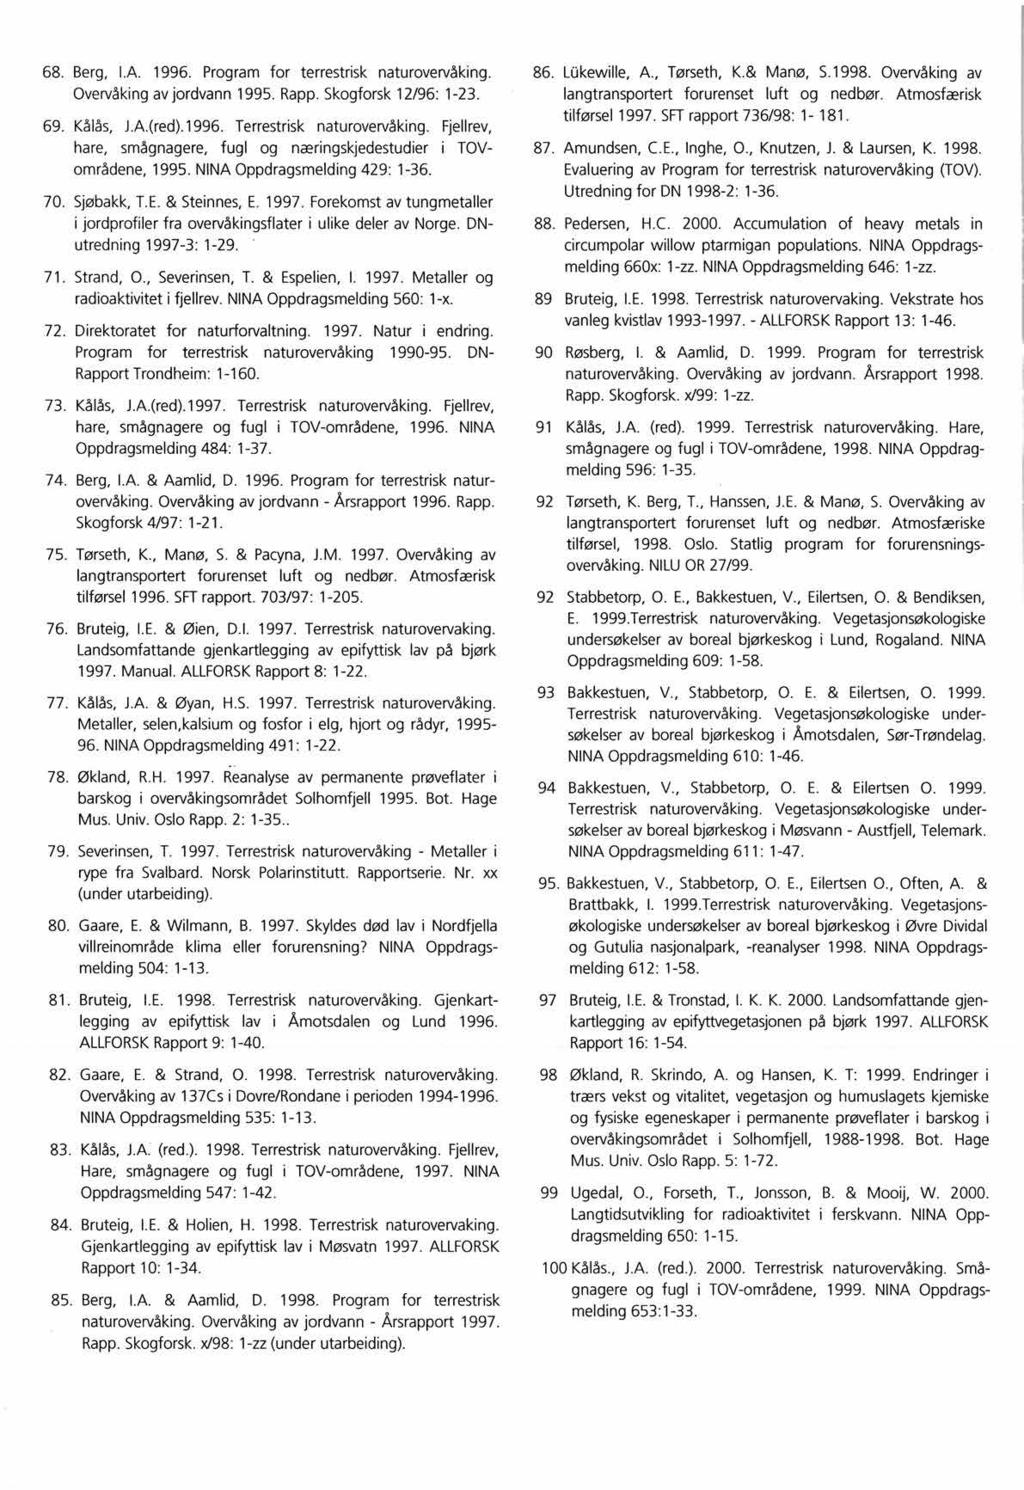 Berg, I.A. 1996. Program for terrestrisk naturovervåking. Overvåkingavjordvann 1995. Rapp.Skogforsk12/96: 1-23. Kålås, J.A.(red).1996. Terrestrisk naturovervåking.